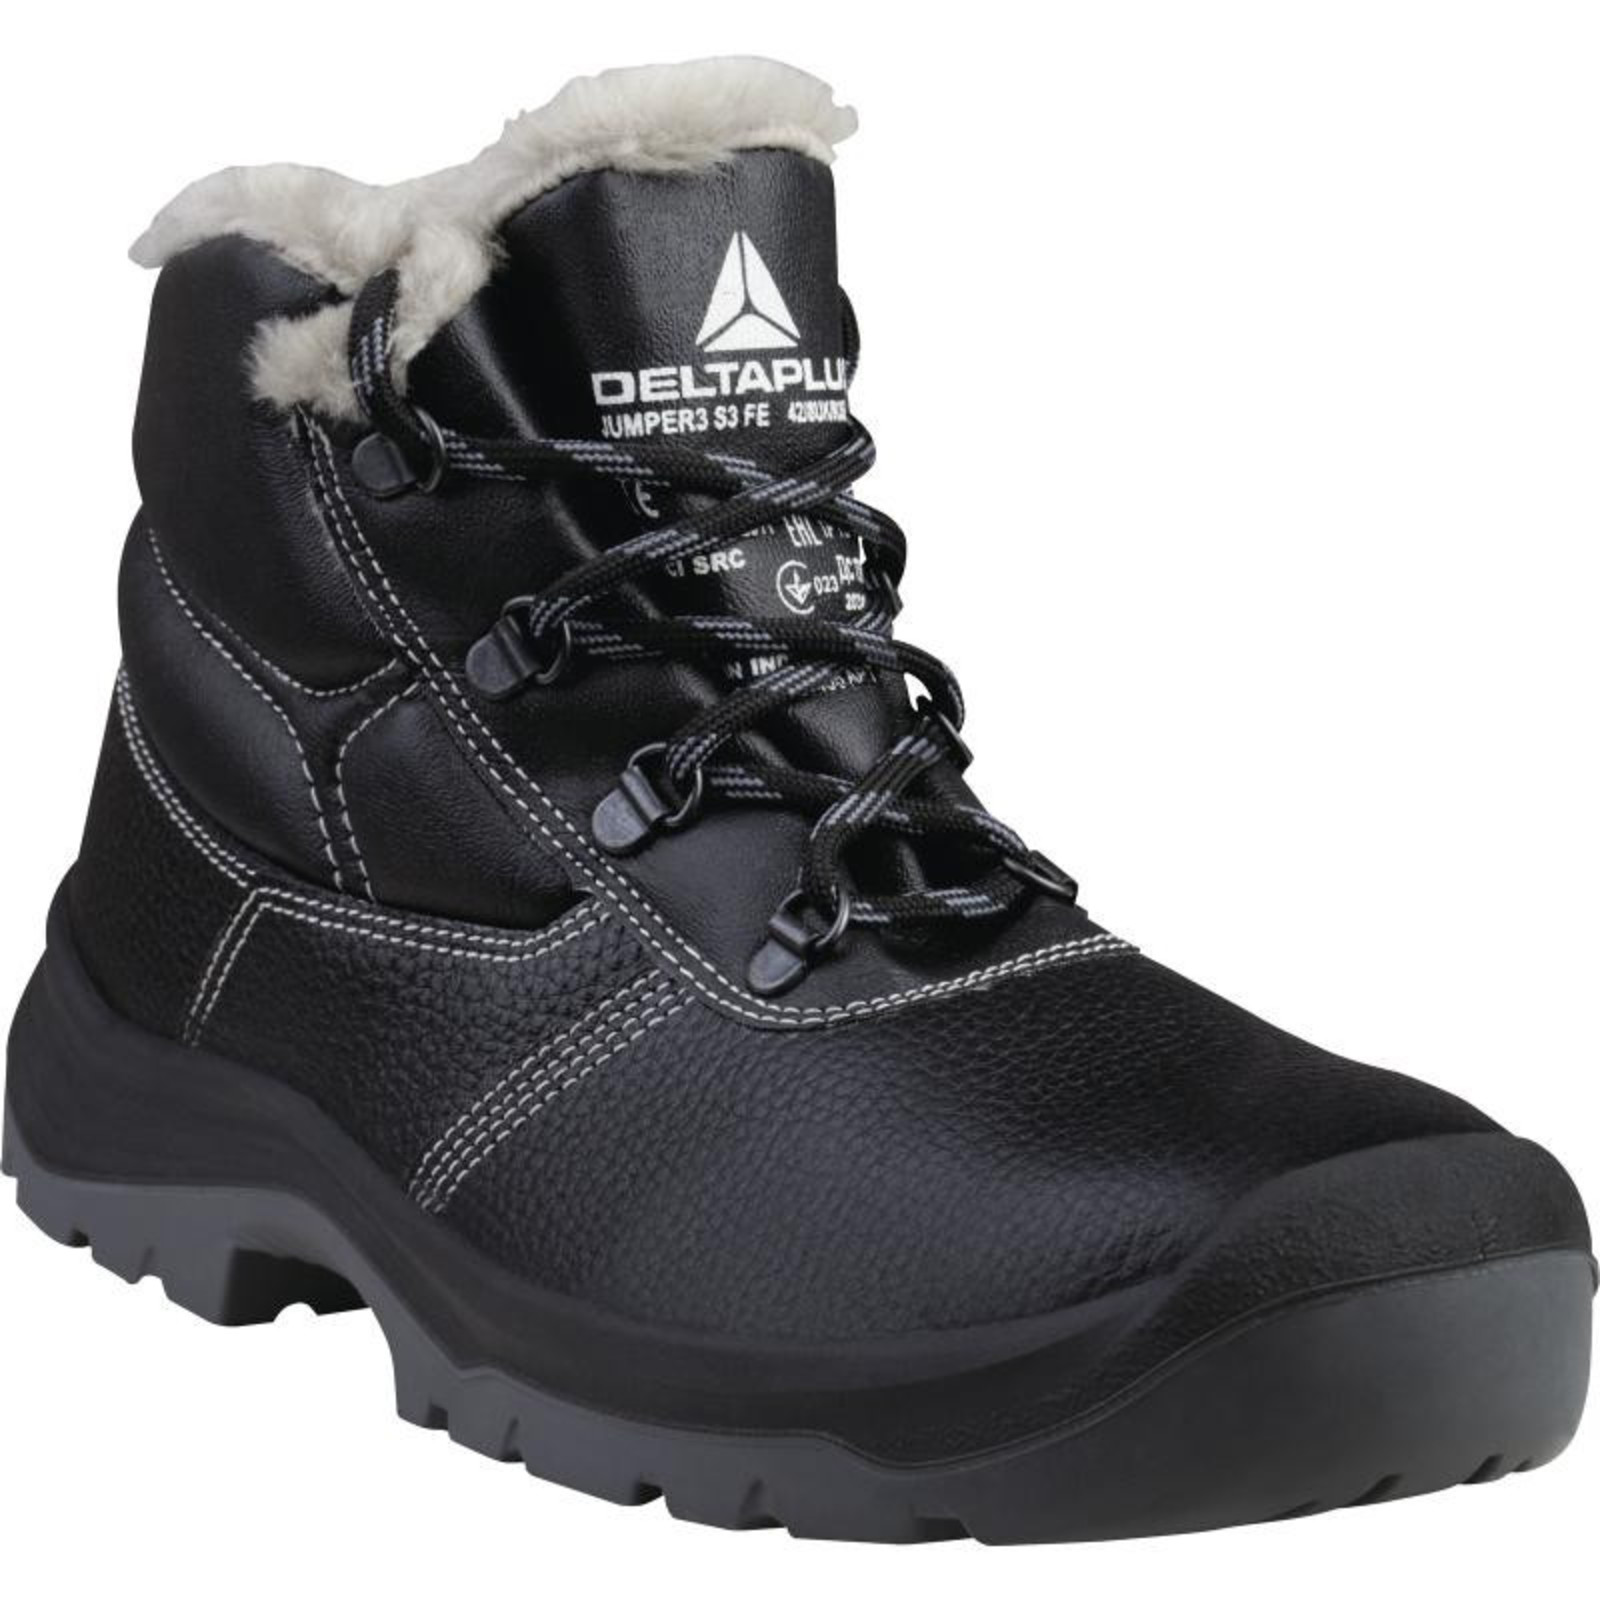 Zimná členková bezpečnostná obuv Delta Plus Jumper3 S3 - veľkosť: 48, farba: čierna